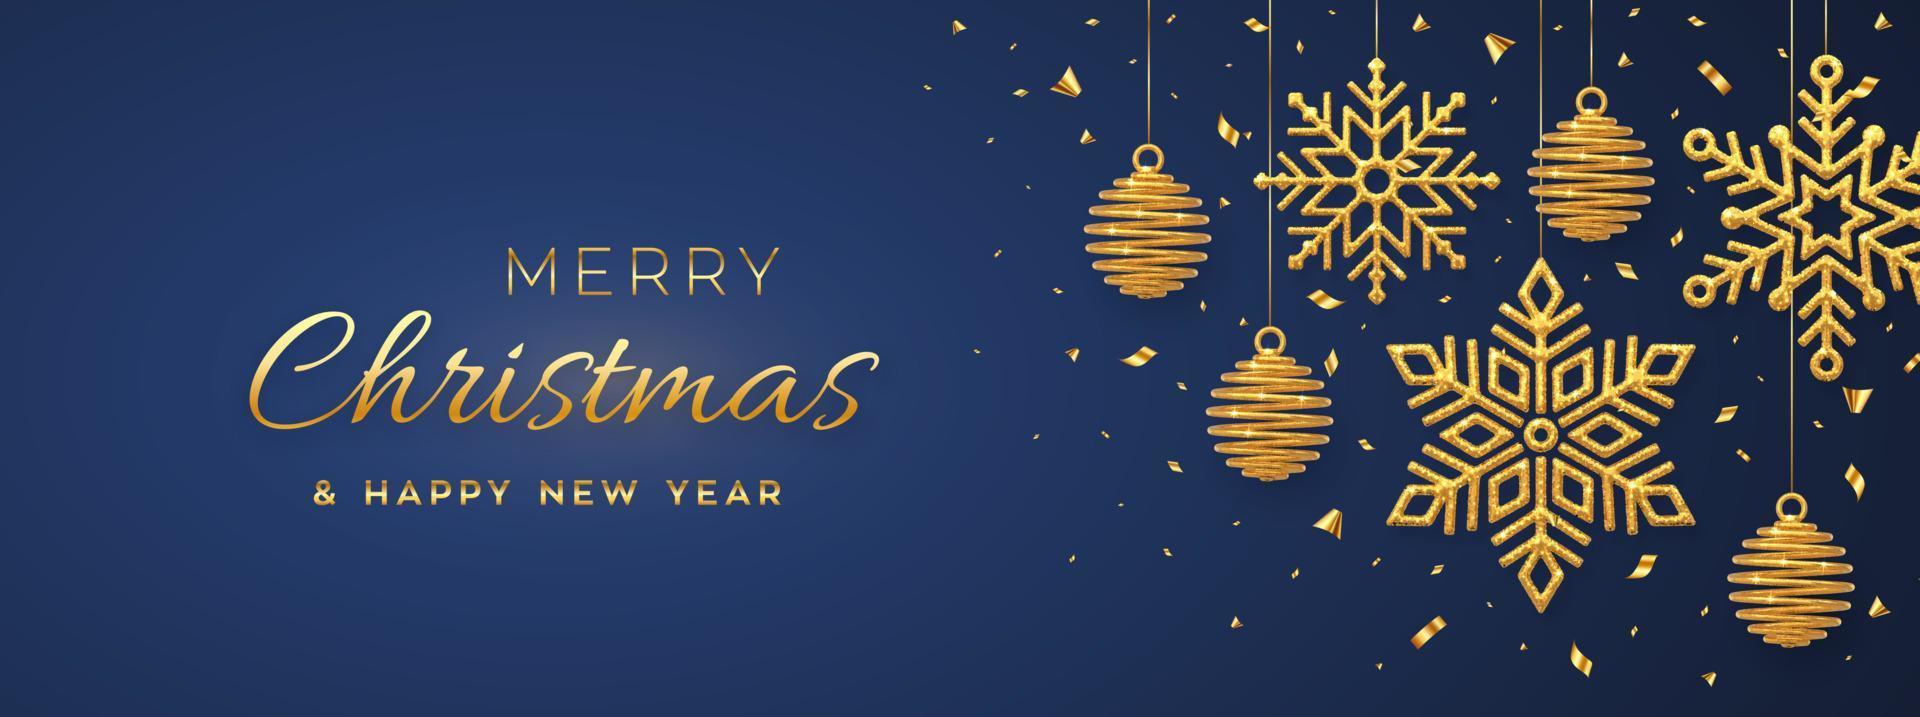 Fondo azul de Navidad con bolas y copos de nieve dorados que cuelgan brillantes. feliz navidad tarjeta de felicitación. cartel de vacaciones de navidad y año nuevo, banner web. ilustración vectorial. vector